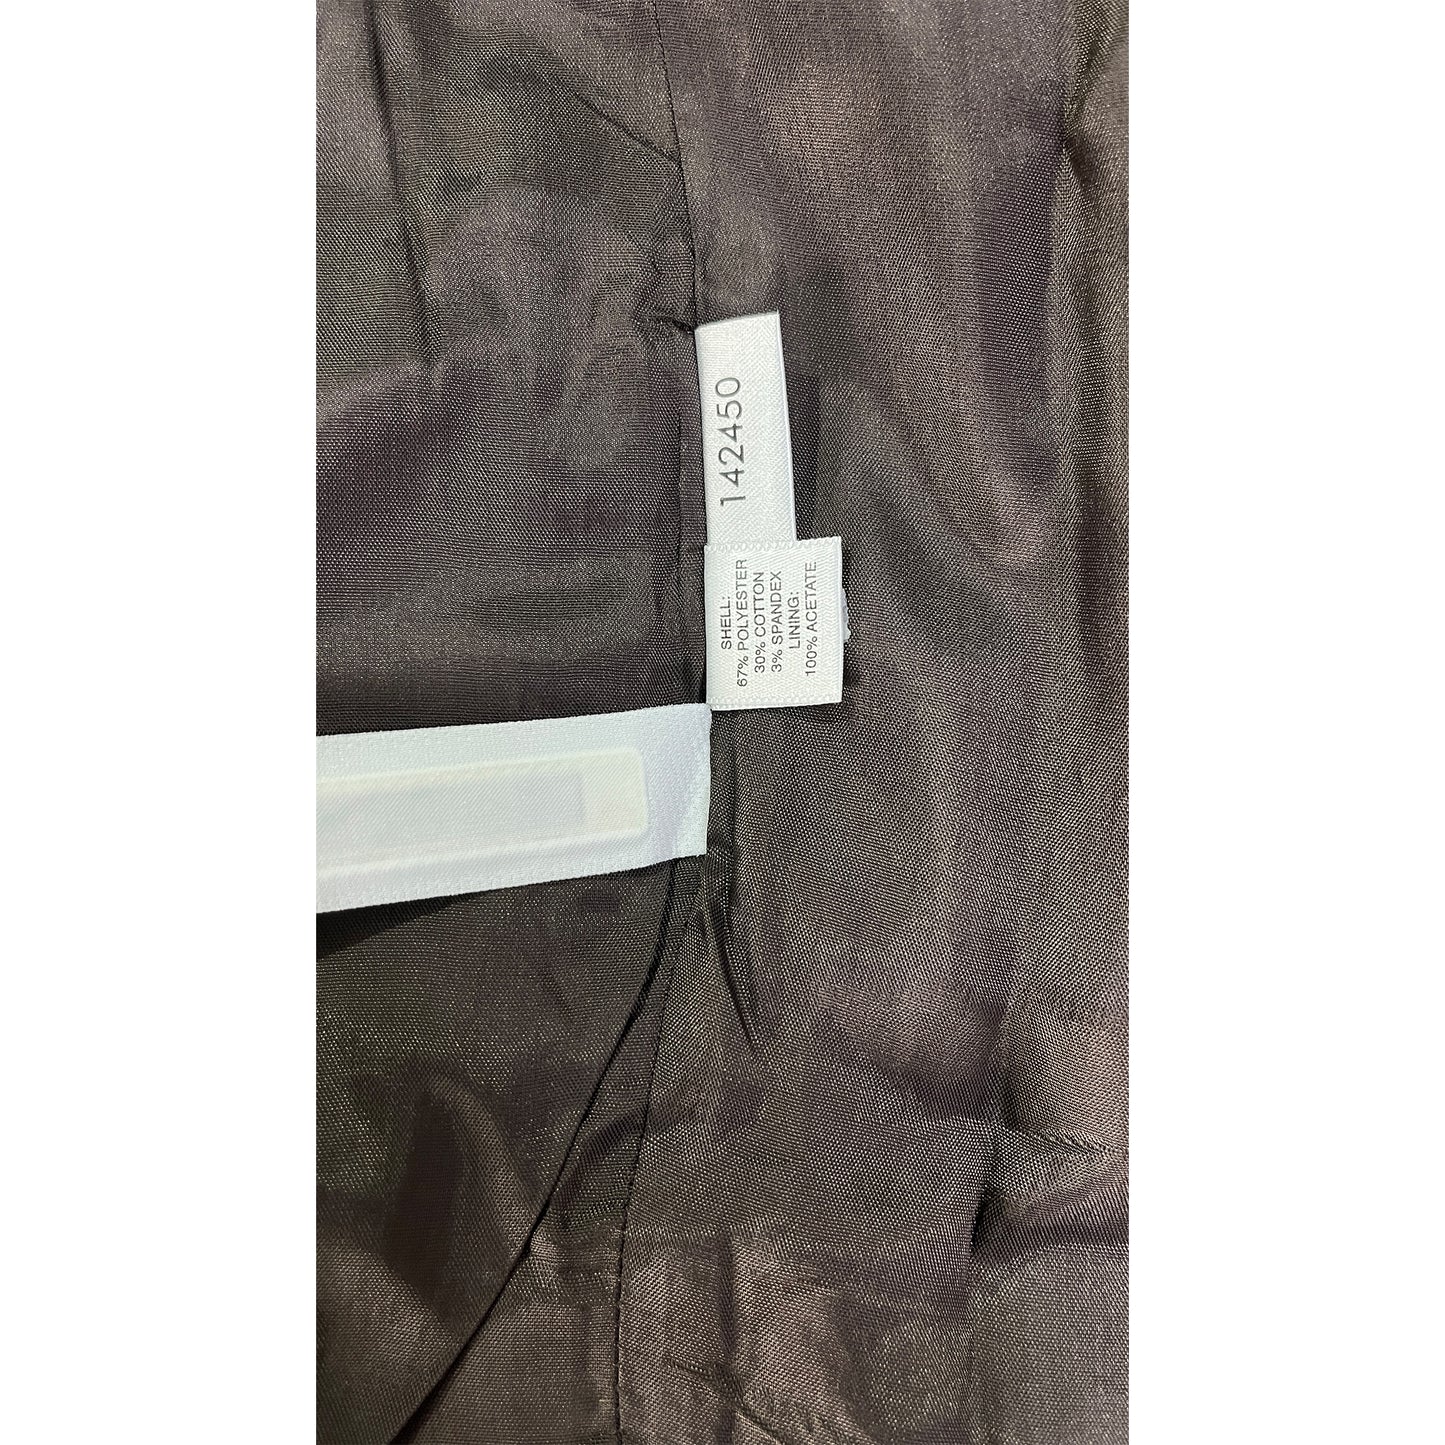 Ann Taylor Dress Pants Dark Brown Size 10P SKU 000276-14